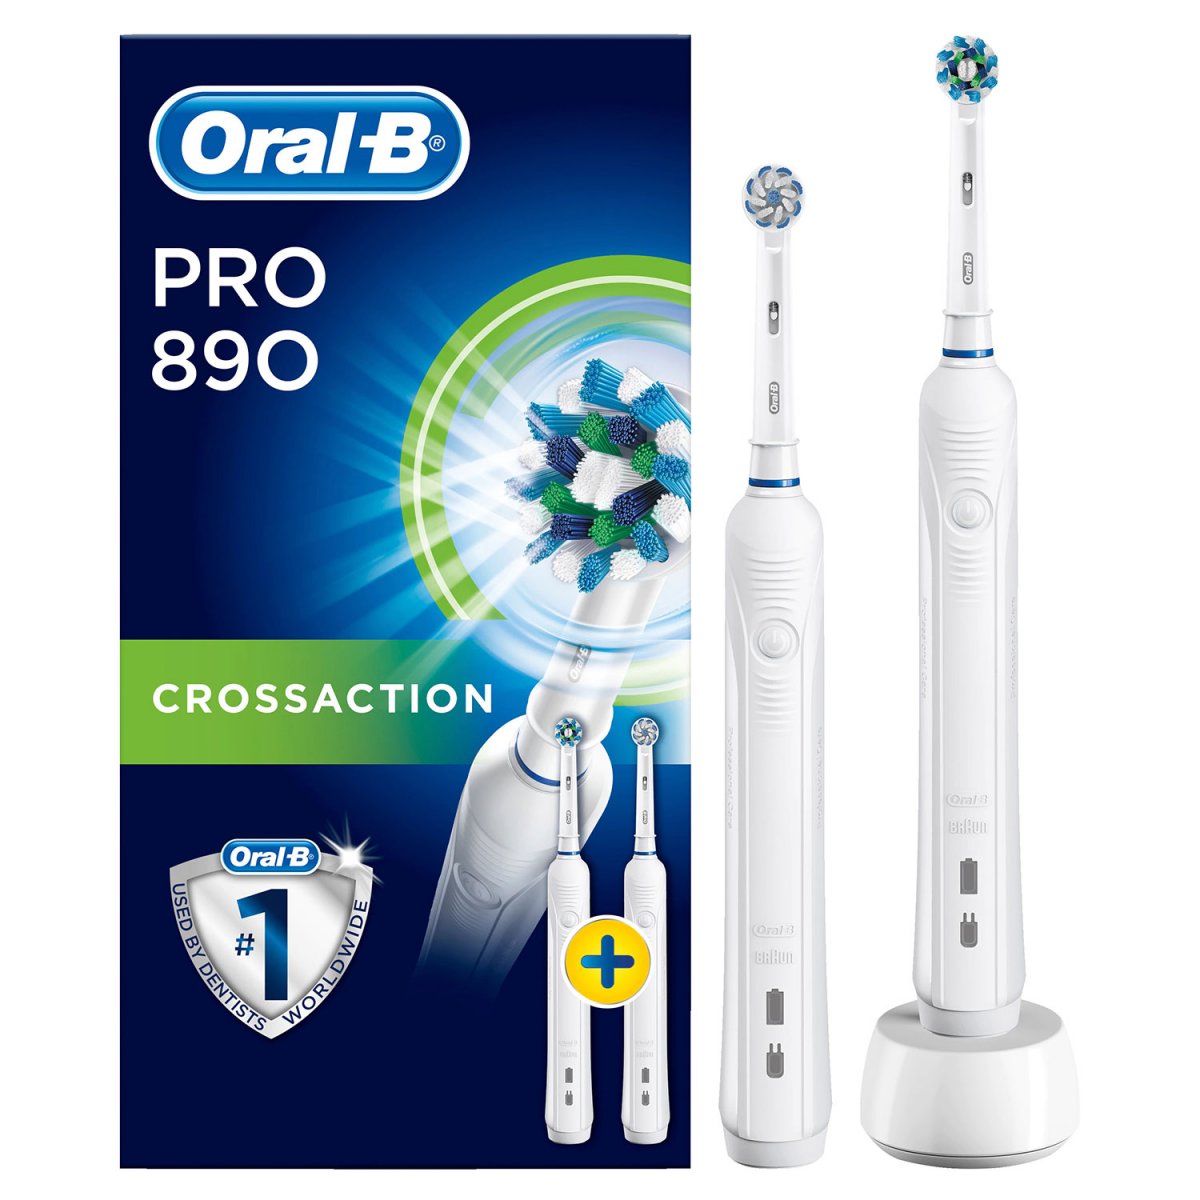 konsol hensynsløs modbydeligt Oral-B 2 stk. El-tandbørster Pro 890 DUO CrossAction - Oral-B Pro  Eltandbørster - MundFrisk.dk